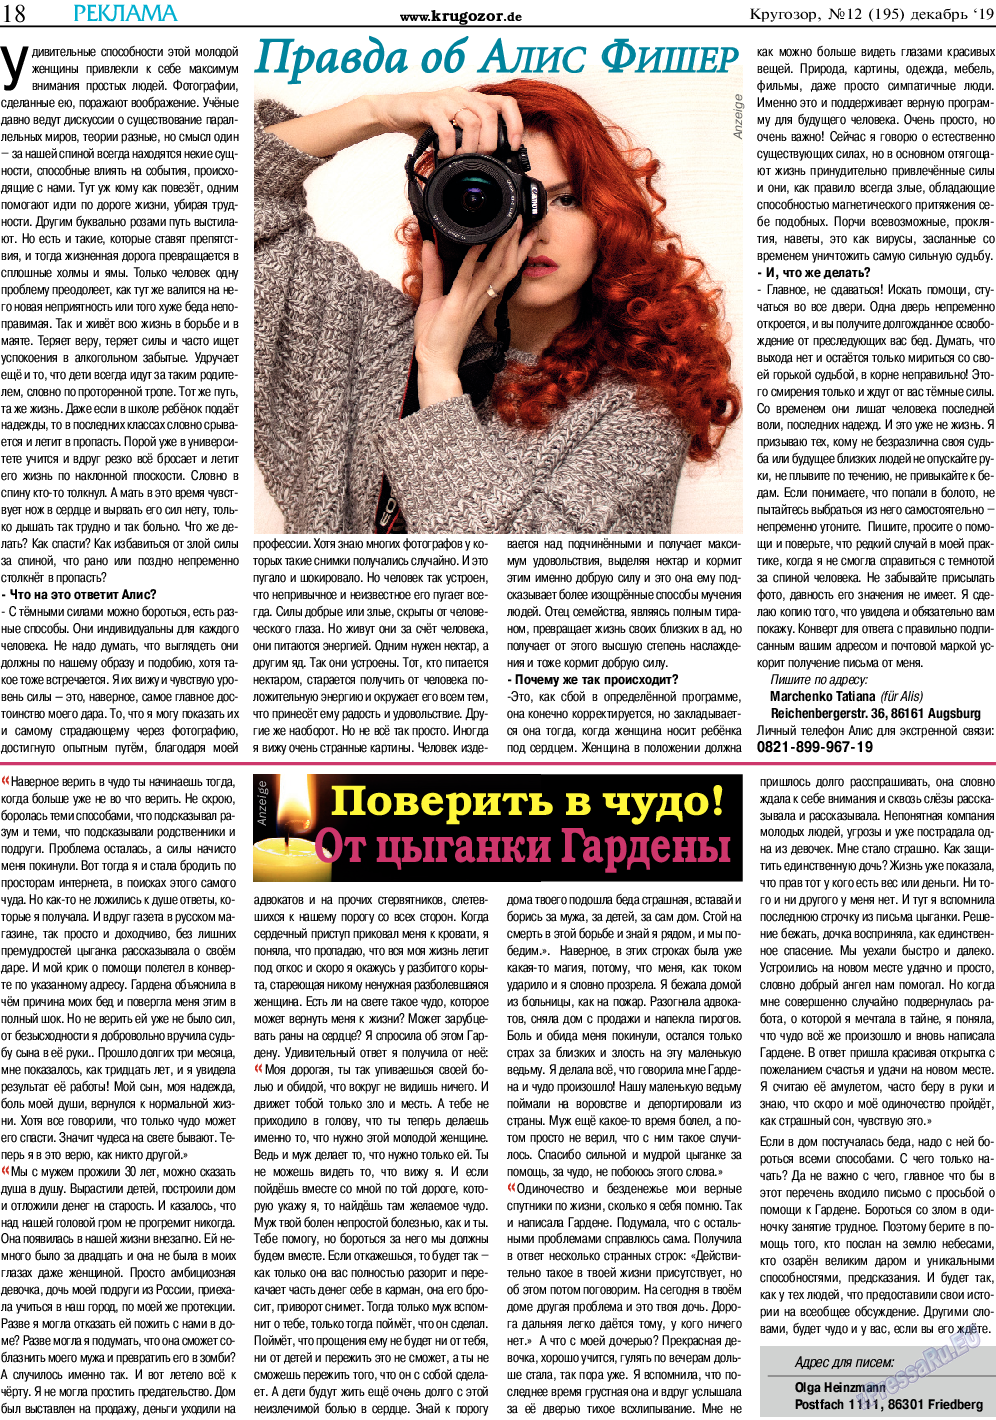 Кругозор, газета. 2019 №12 стр.18